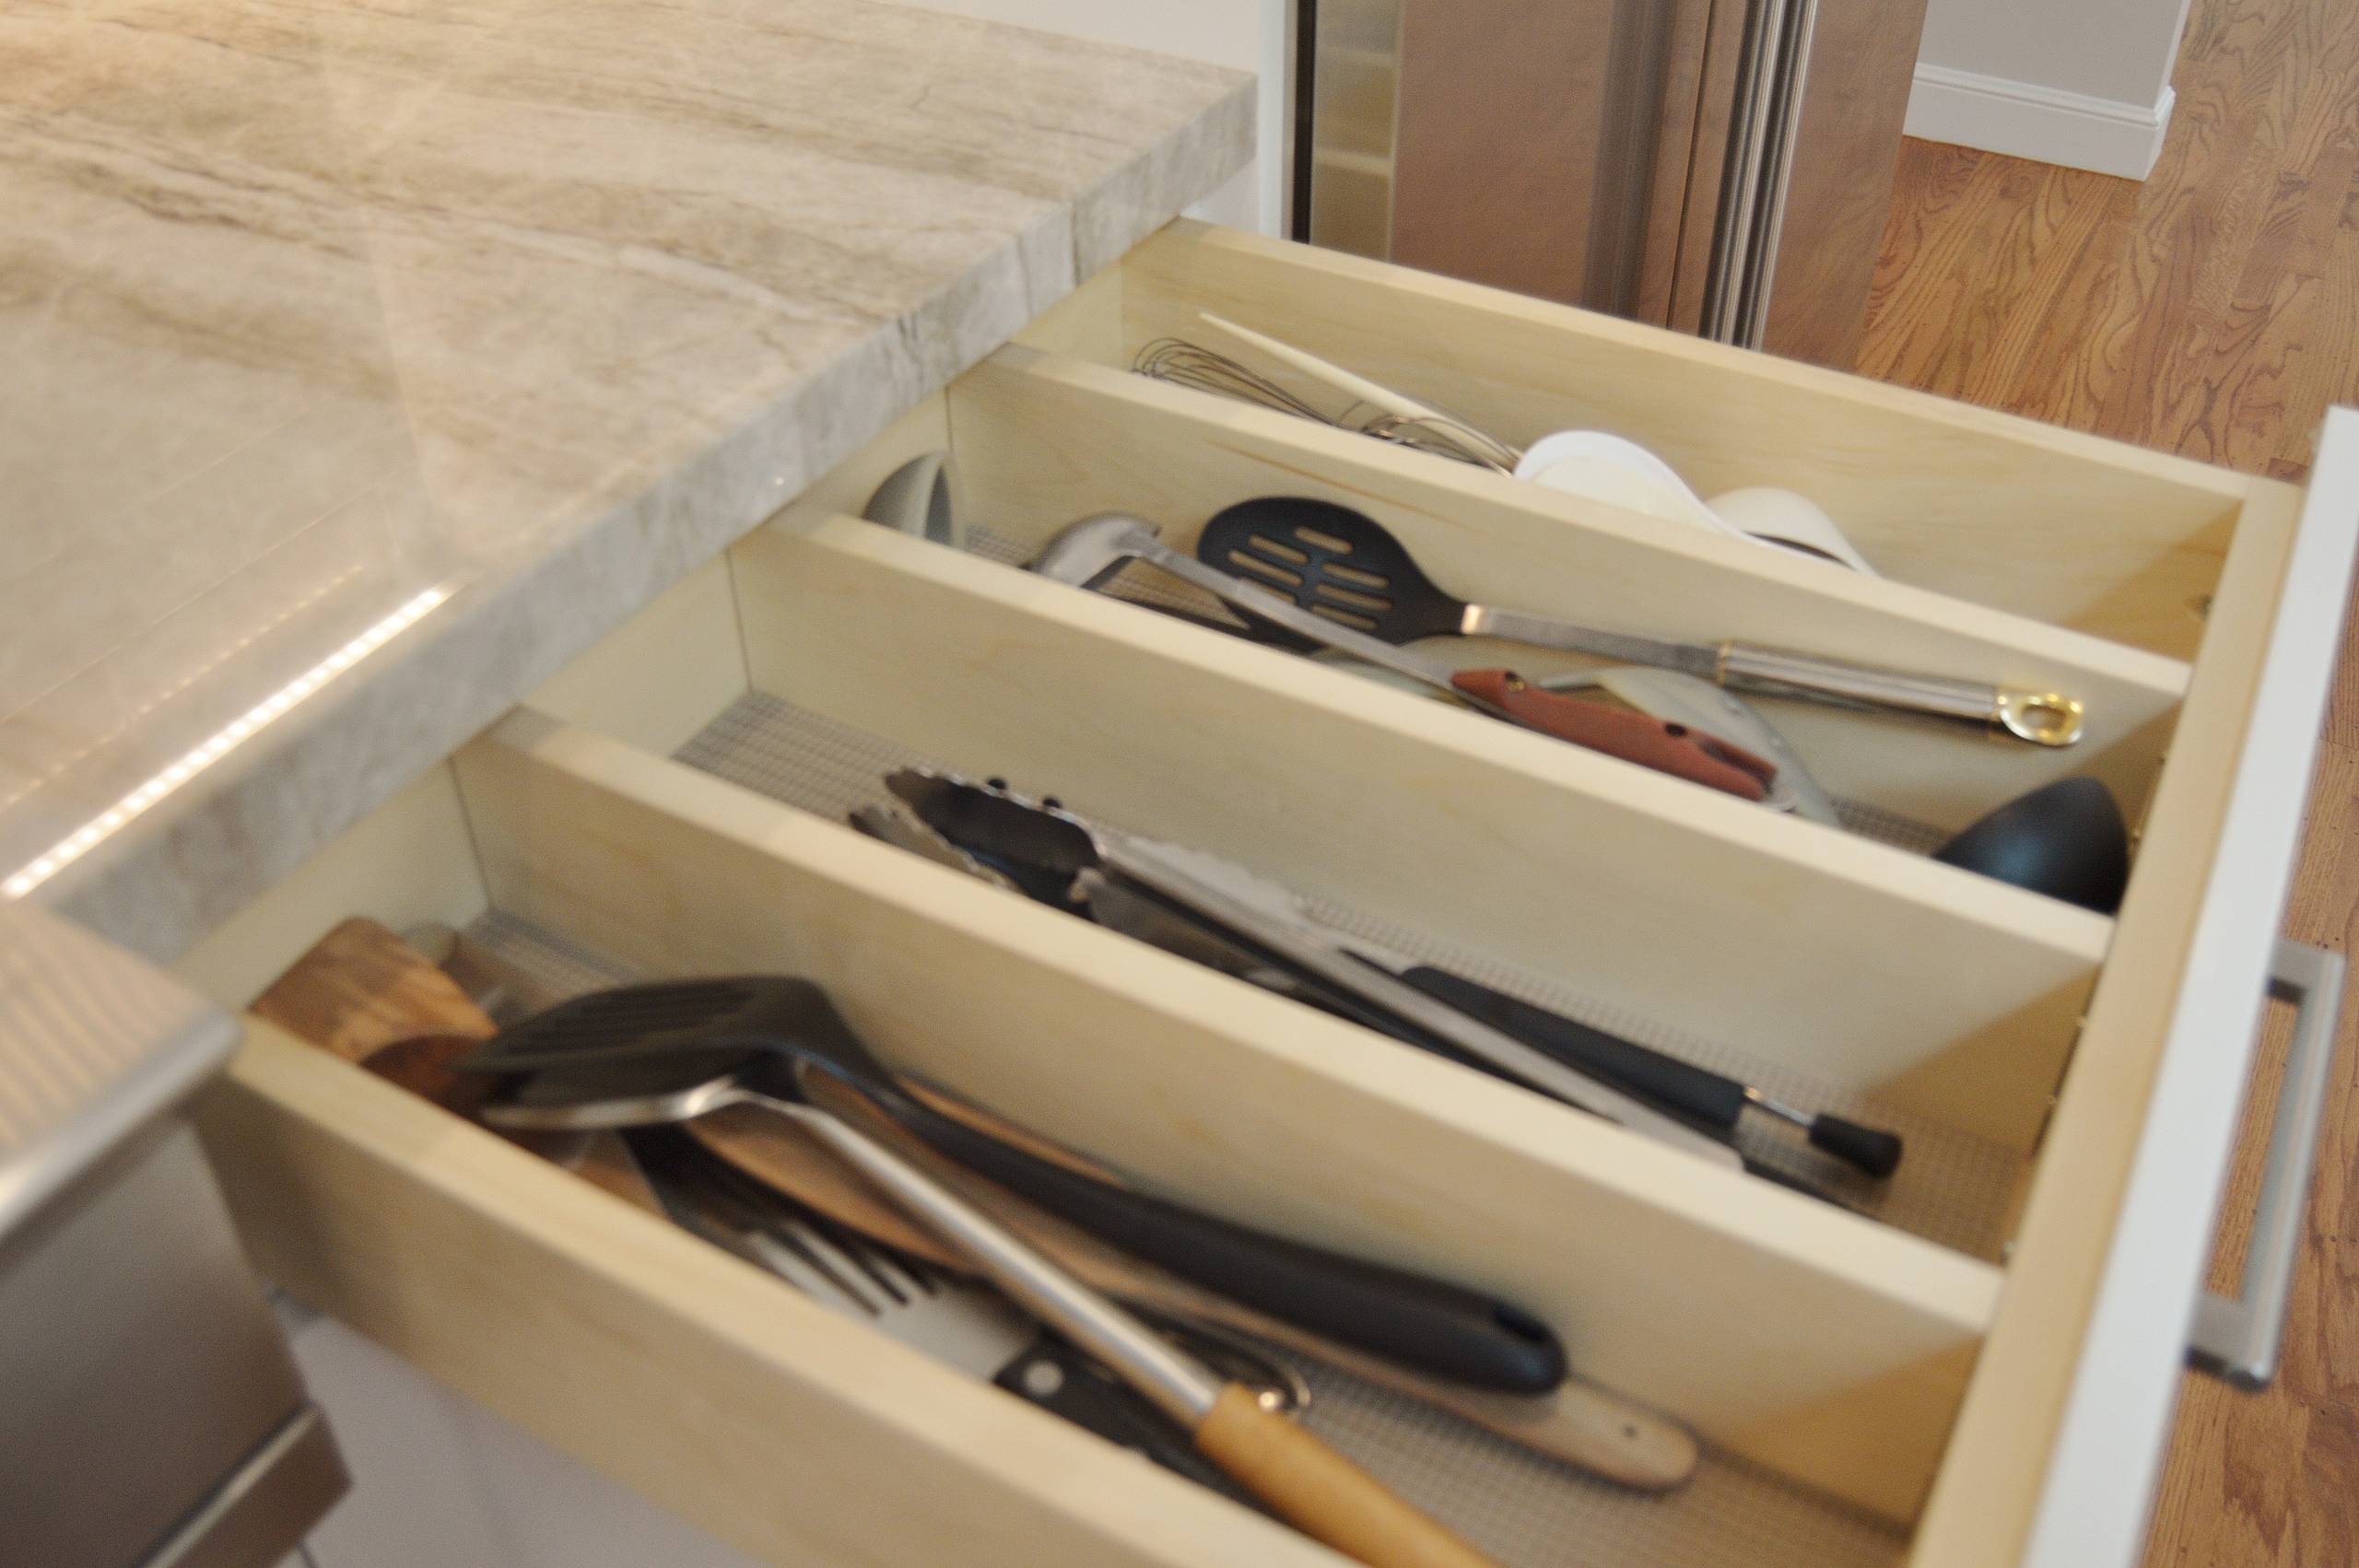 Cooking utensil drawer